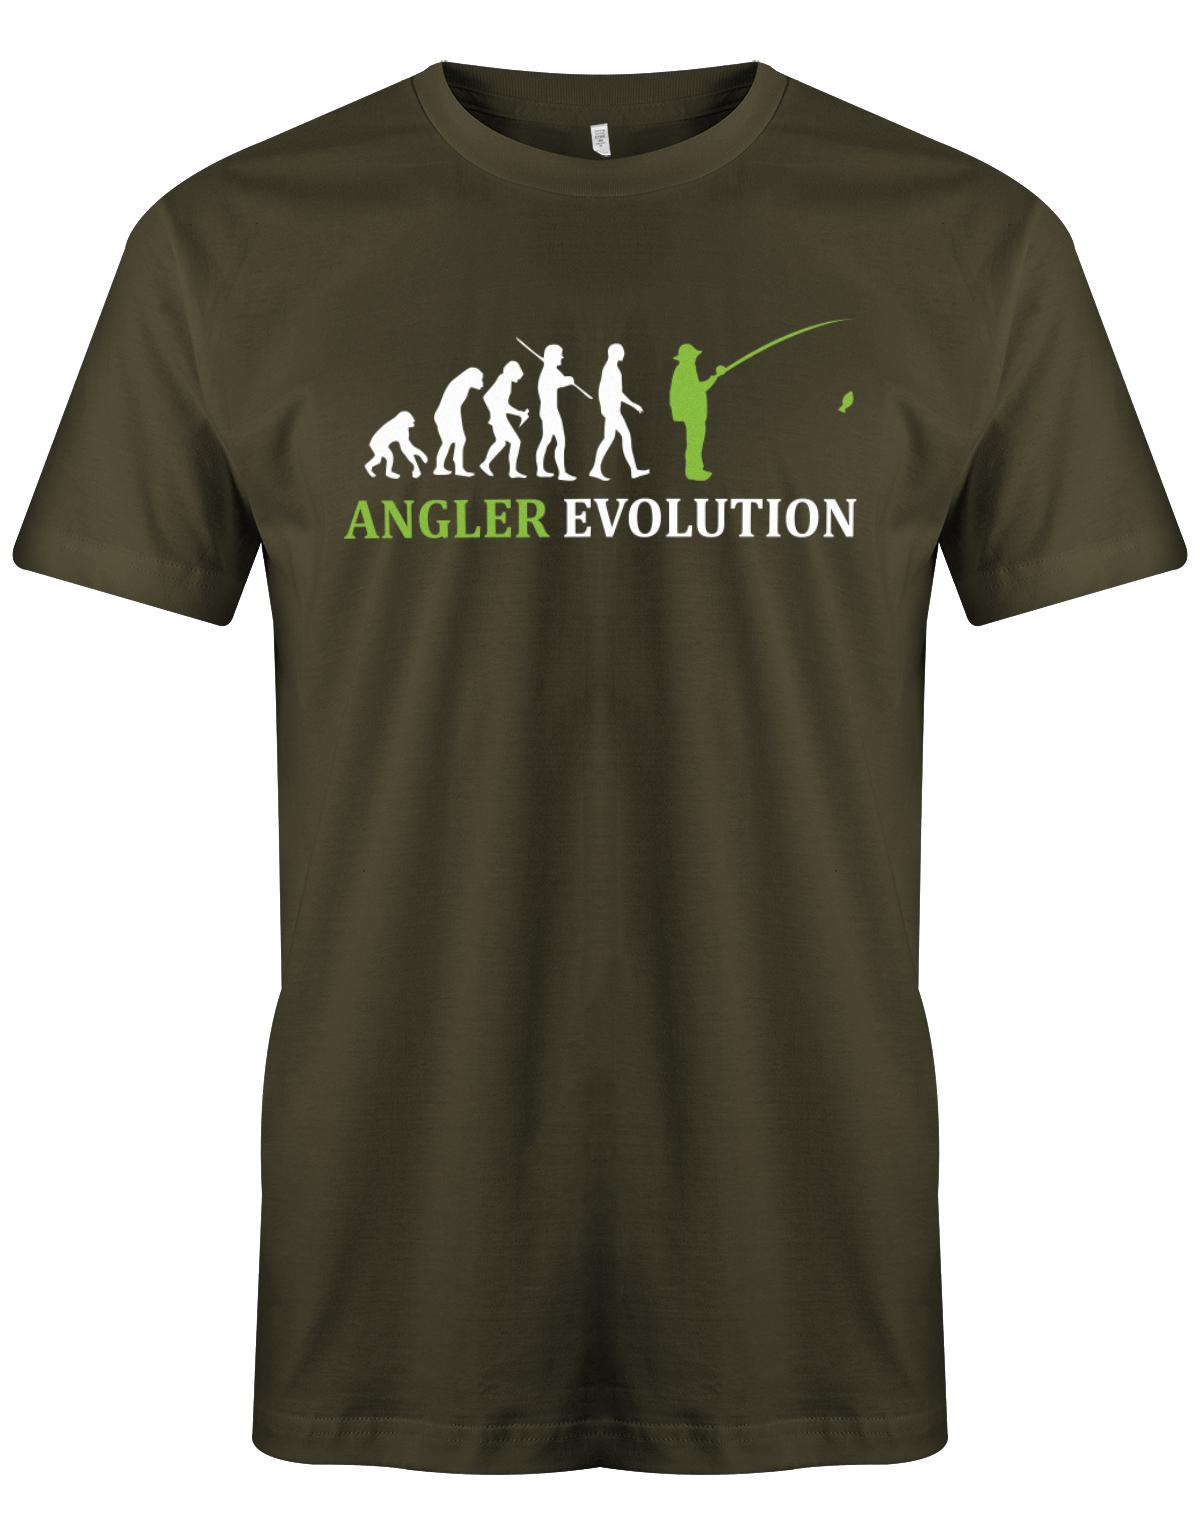 Angler-Evolution-Herren-Shirt-Army